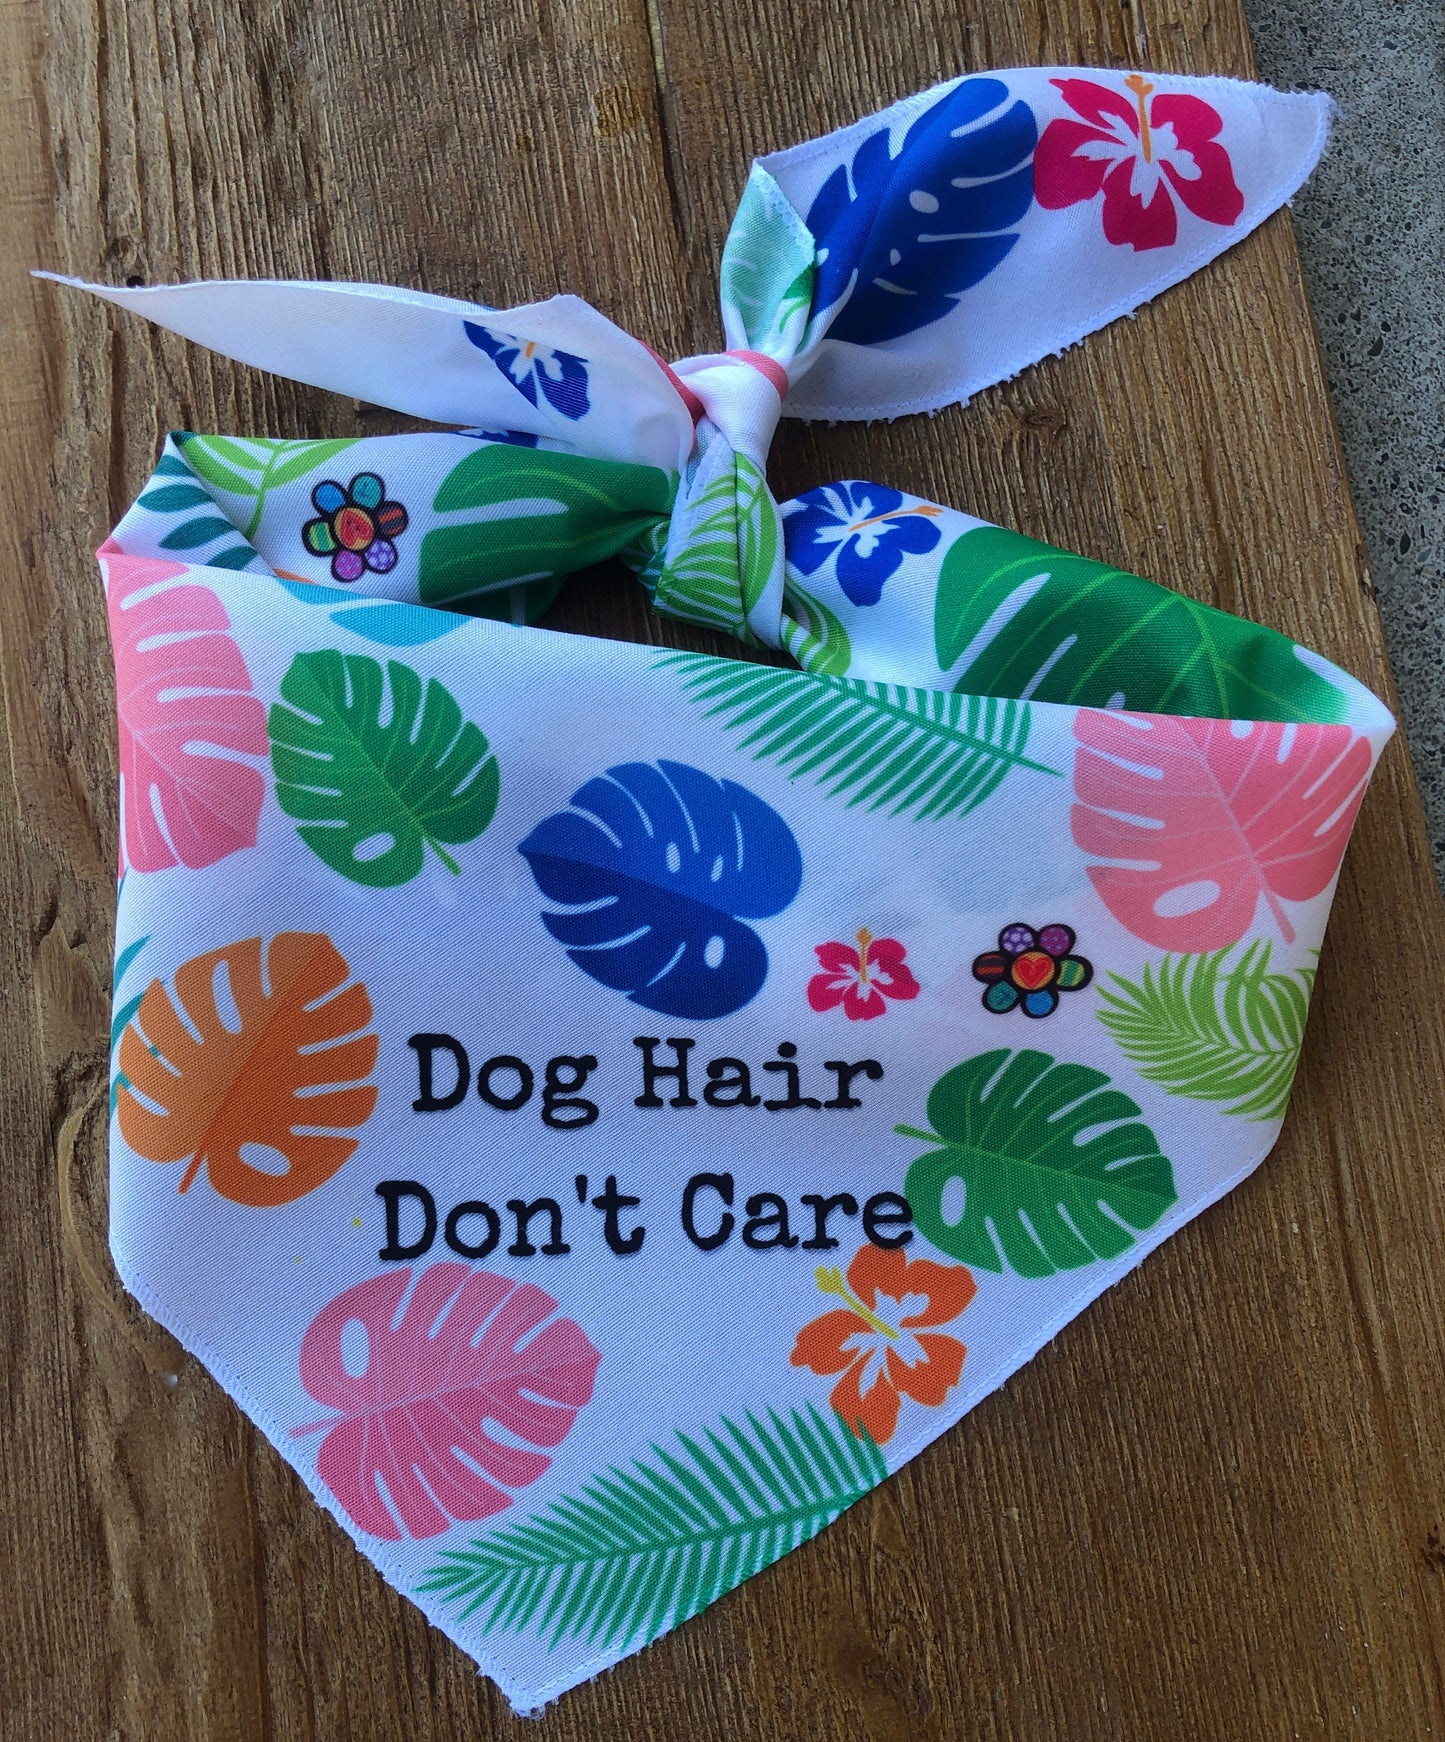 Dog Hair Don't care dog Bandana, Custom Dog bandana, Monstera dog bandana, custom dog gifts,  summer fun dog accessories, good dog gift